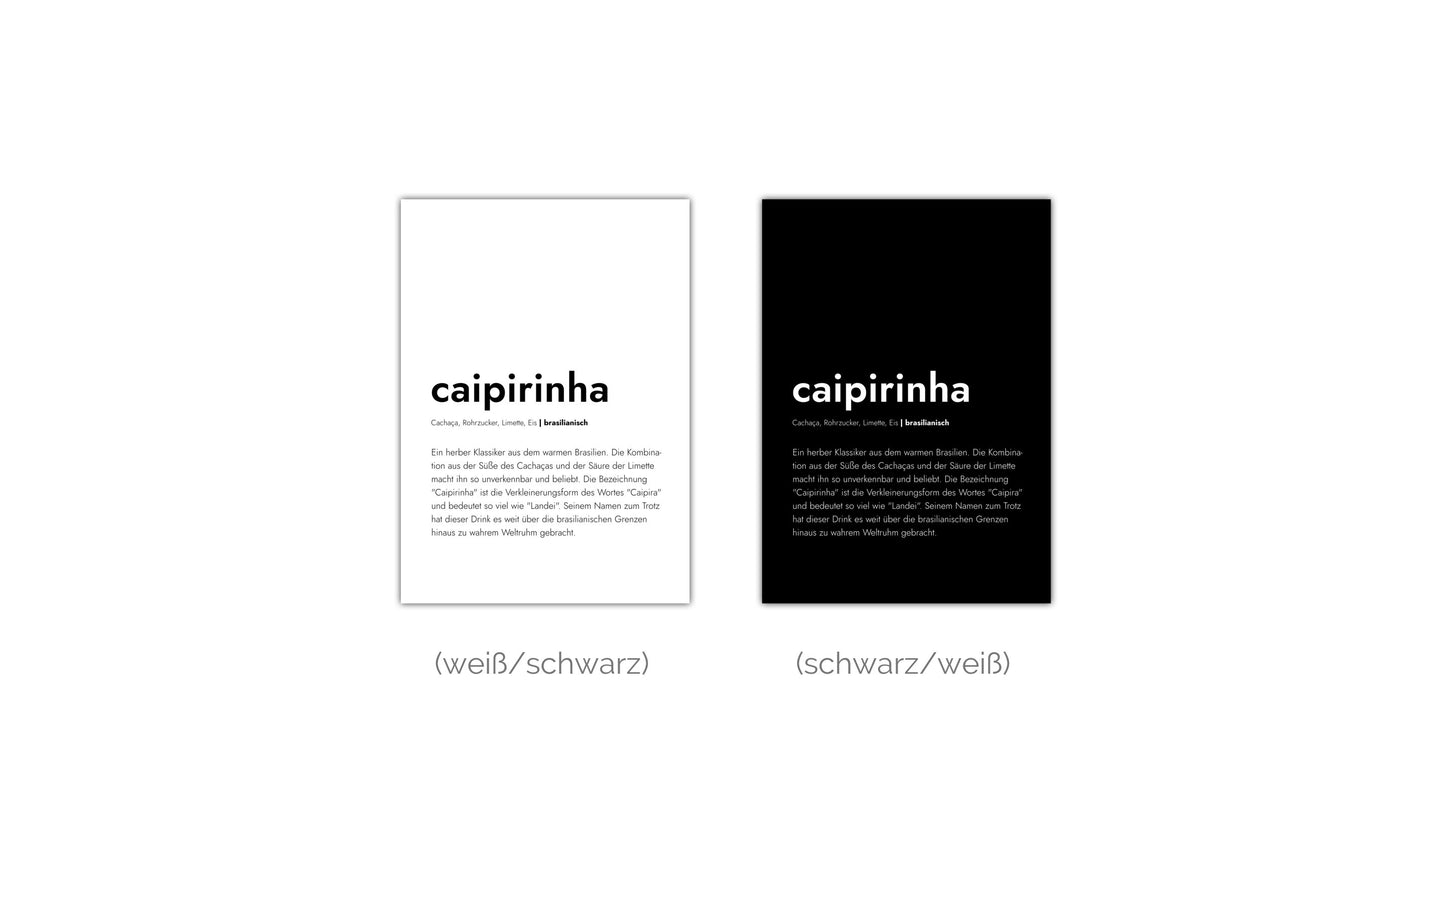 Poster Caipirinha - Definition